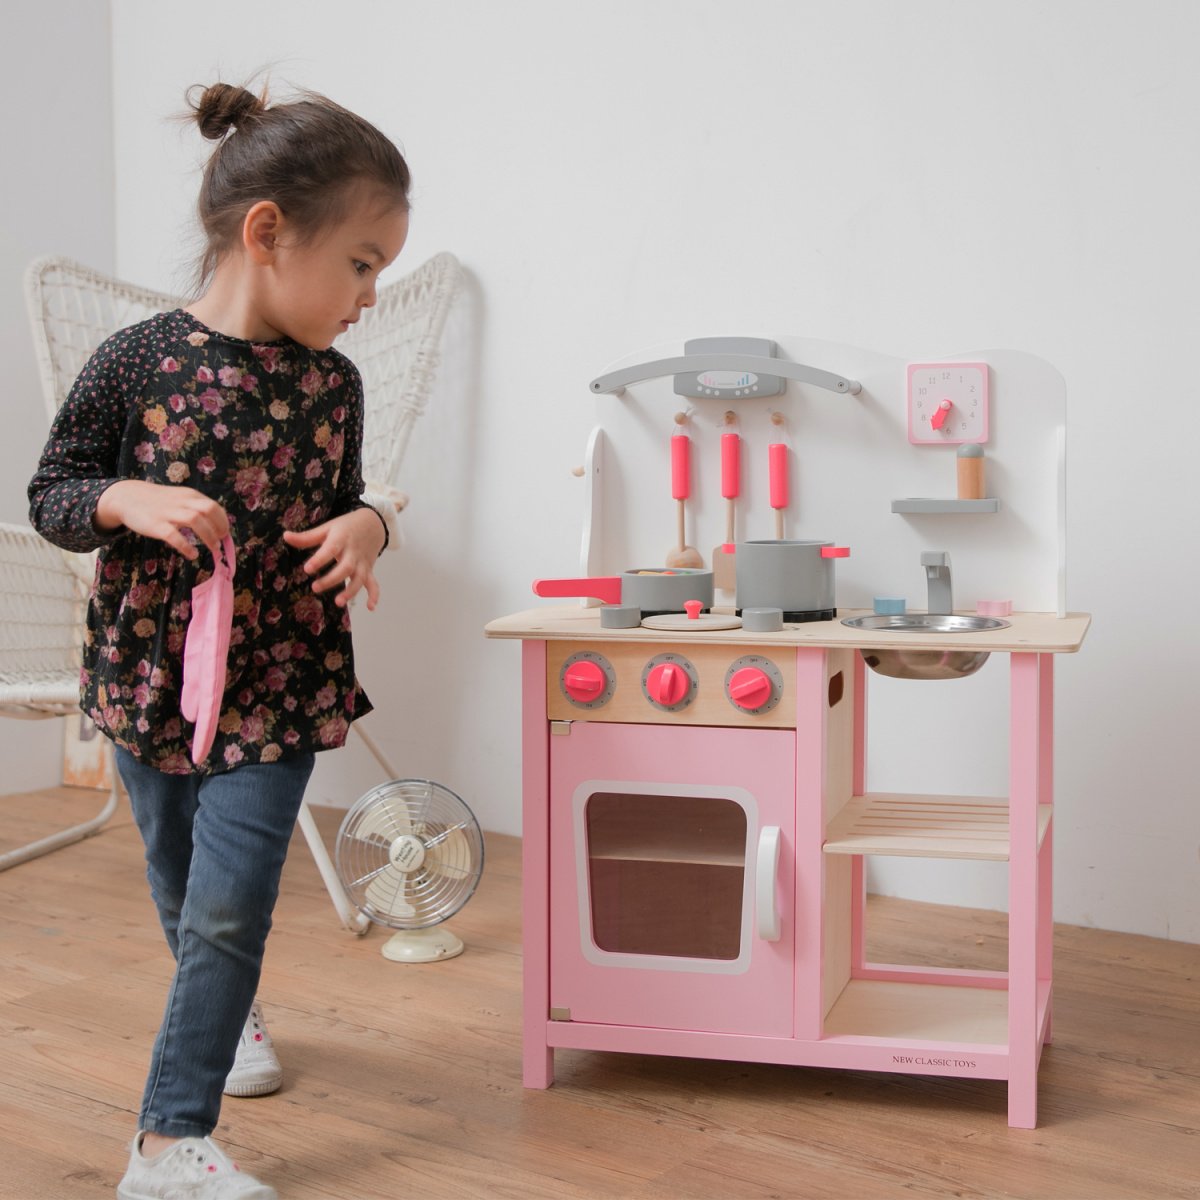 Іграшкова кухня New Classic Toys Bon Appetit, рожевий (11054) - фото 2